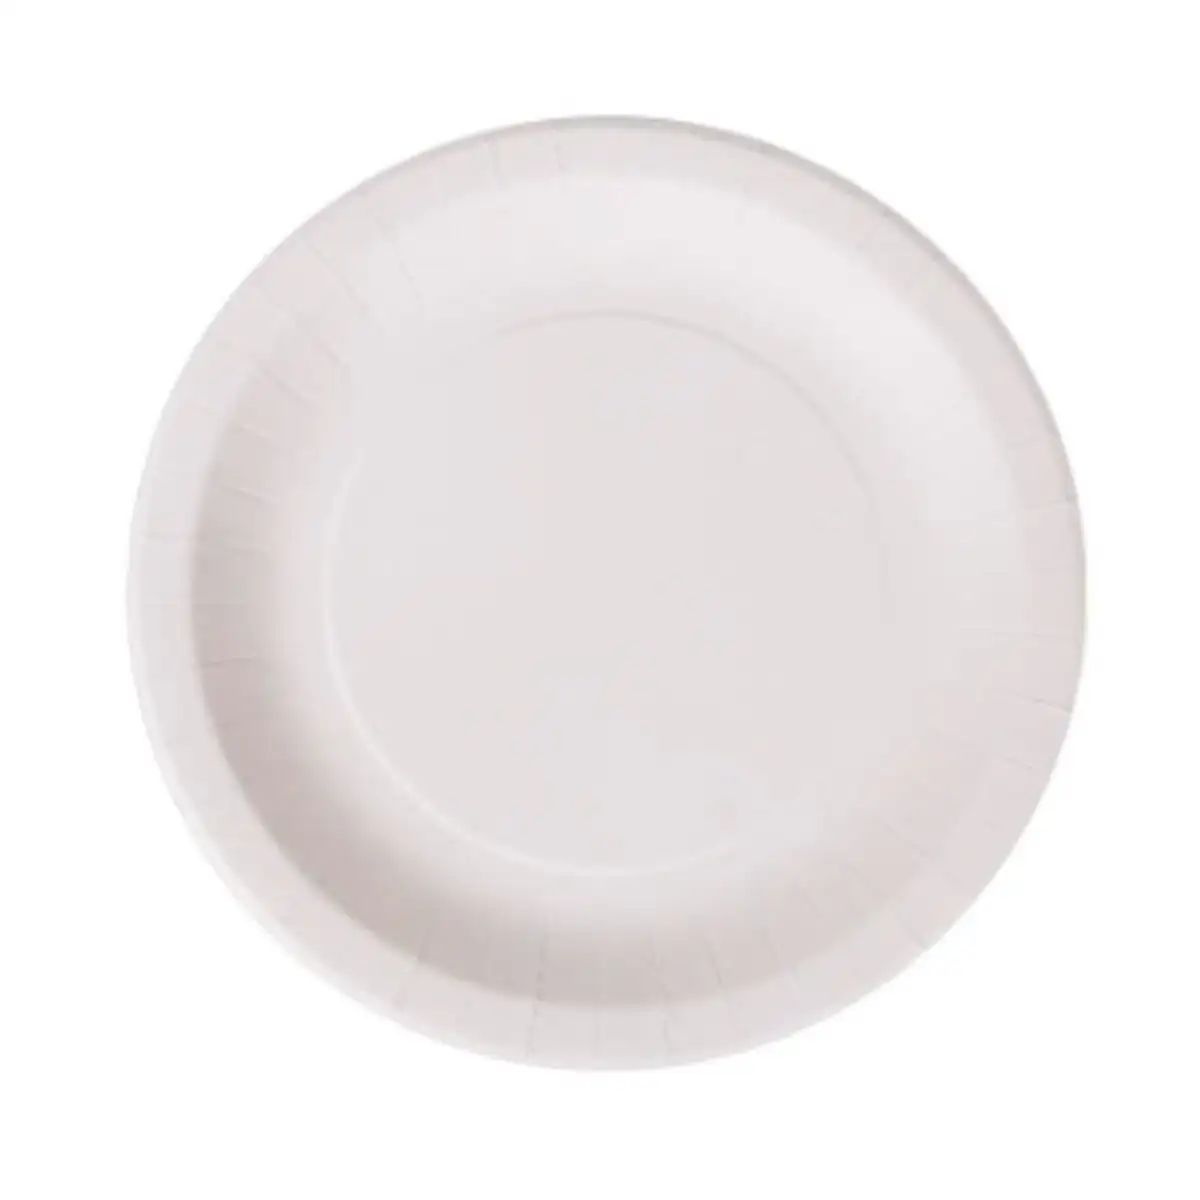 Service de vaisselle algon rond blanc carton produits a usage unique 28 cm 25 unites_4970. DIAYTAR SENEGAL - L'Art du Shopping Facilité. Naviguez sur notre plateforme en ligne pour découvrir une expérience d'achat fluide et agréable, avec une gamme de produits adaptés à tous.